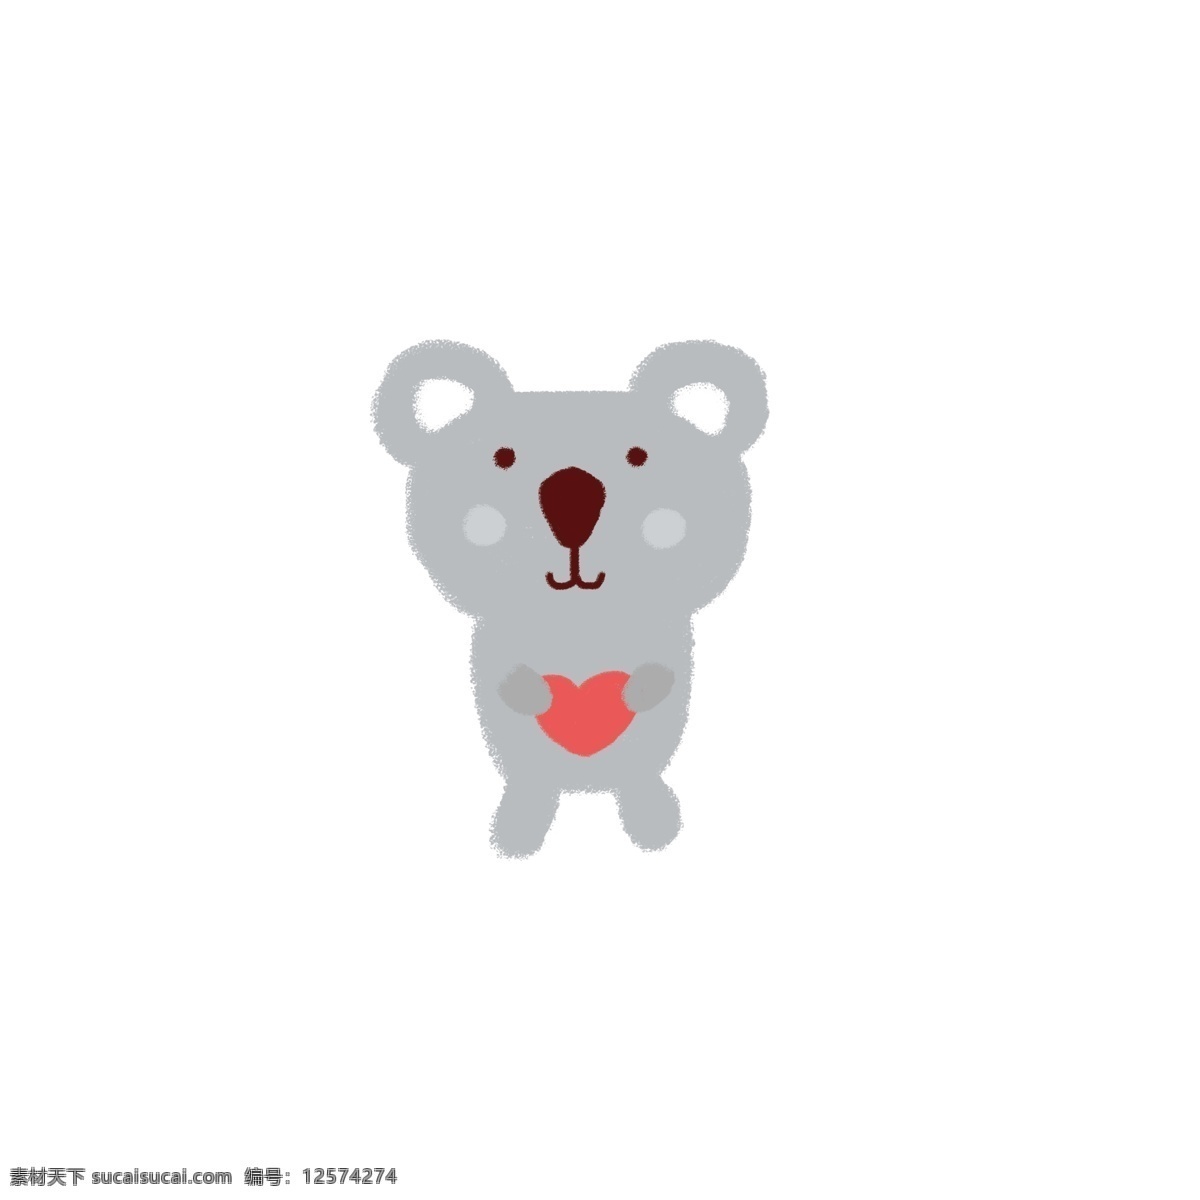 原创 手绘 动物 考拉 树袋熊 手绘动物 小动物 卡通动物 手绘卡拉 熊